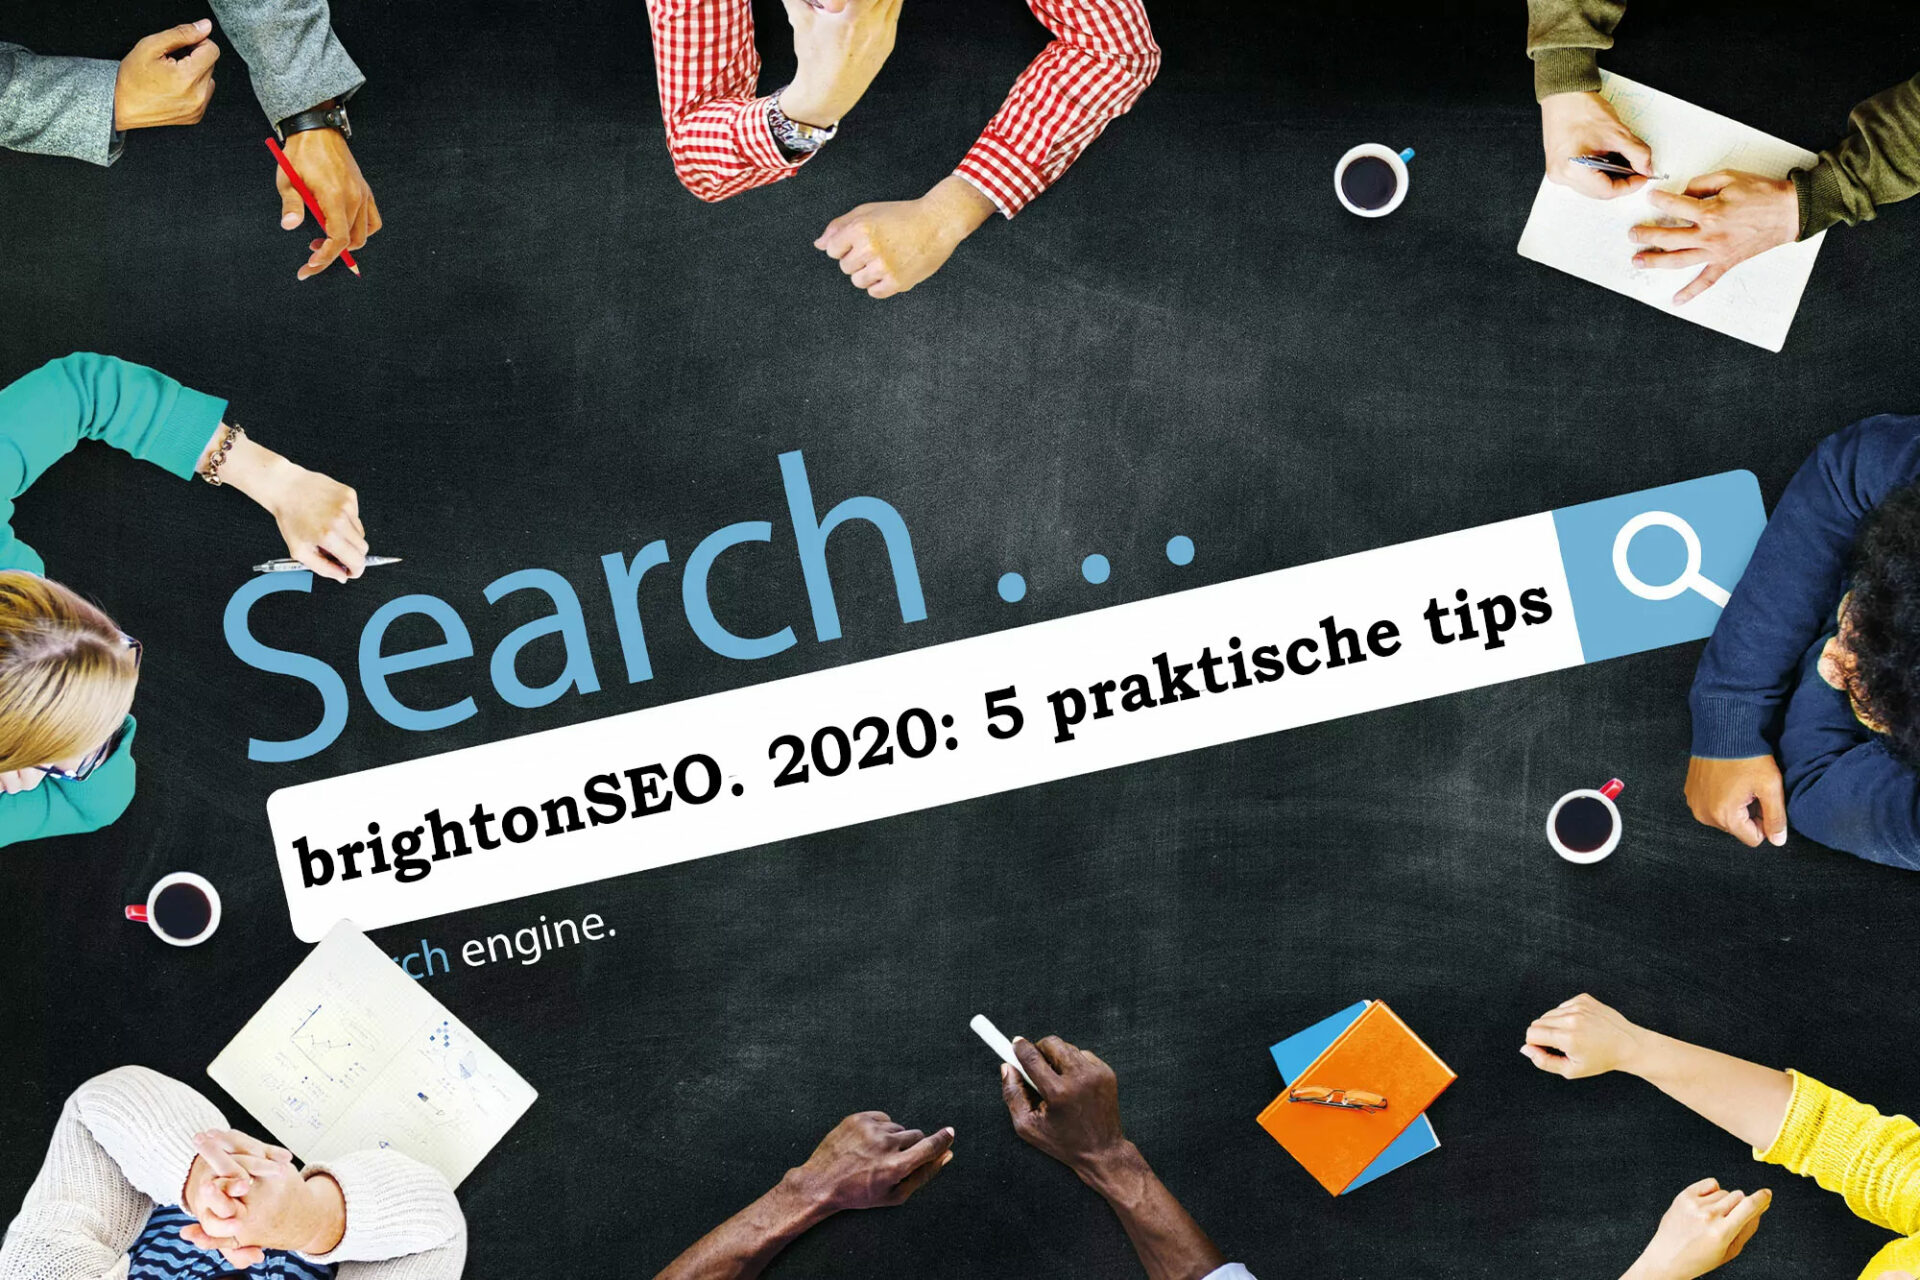 brightonSEO. 2020 5 praktische tips